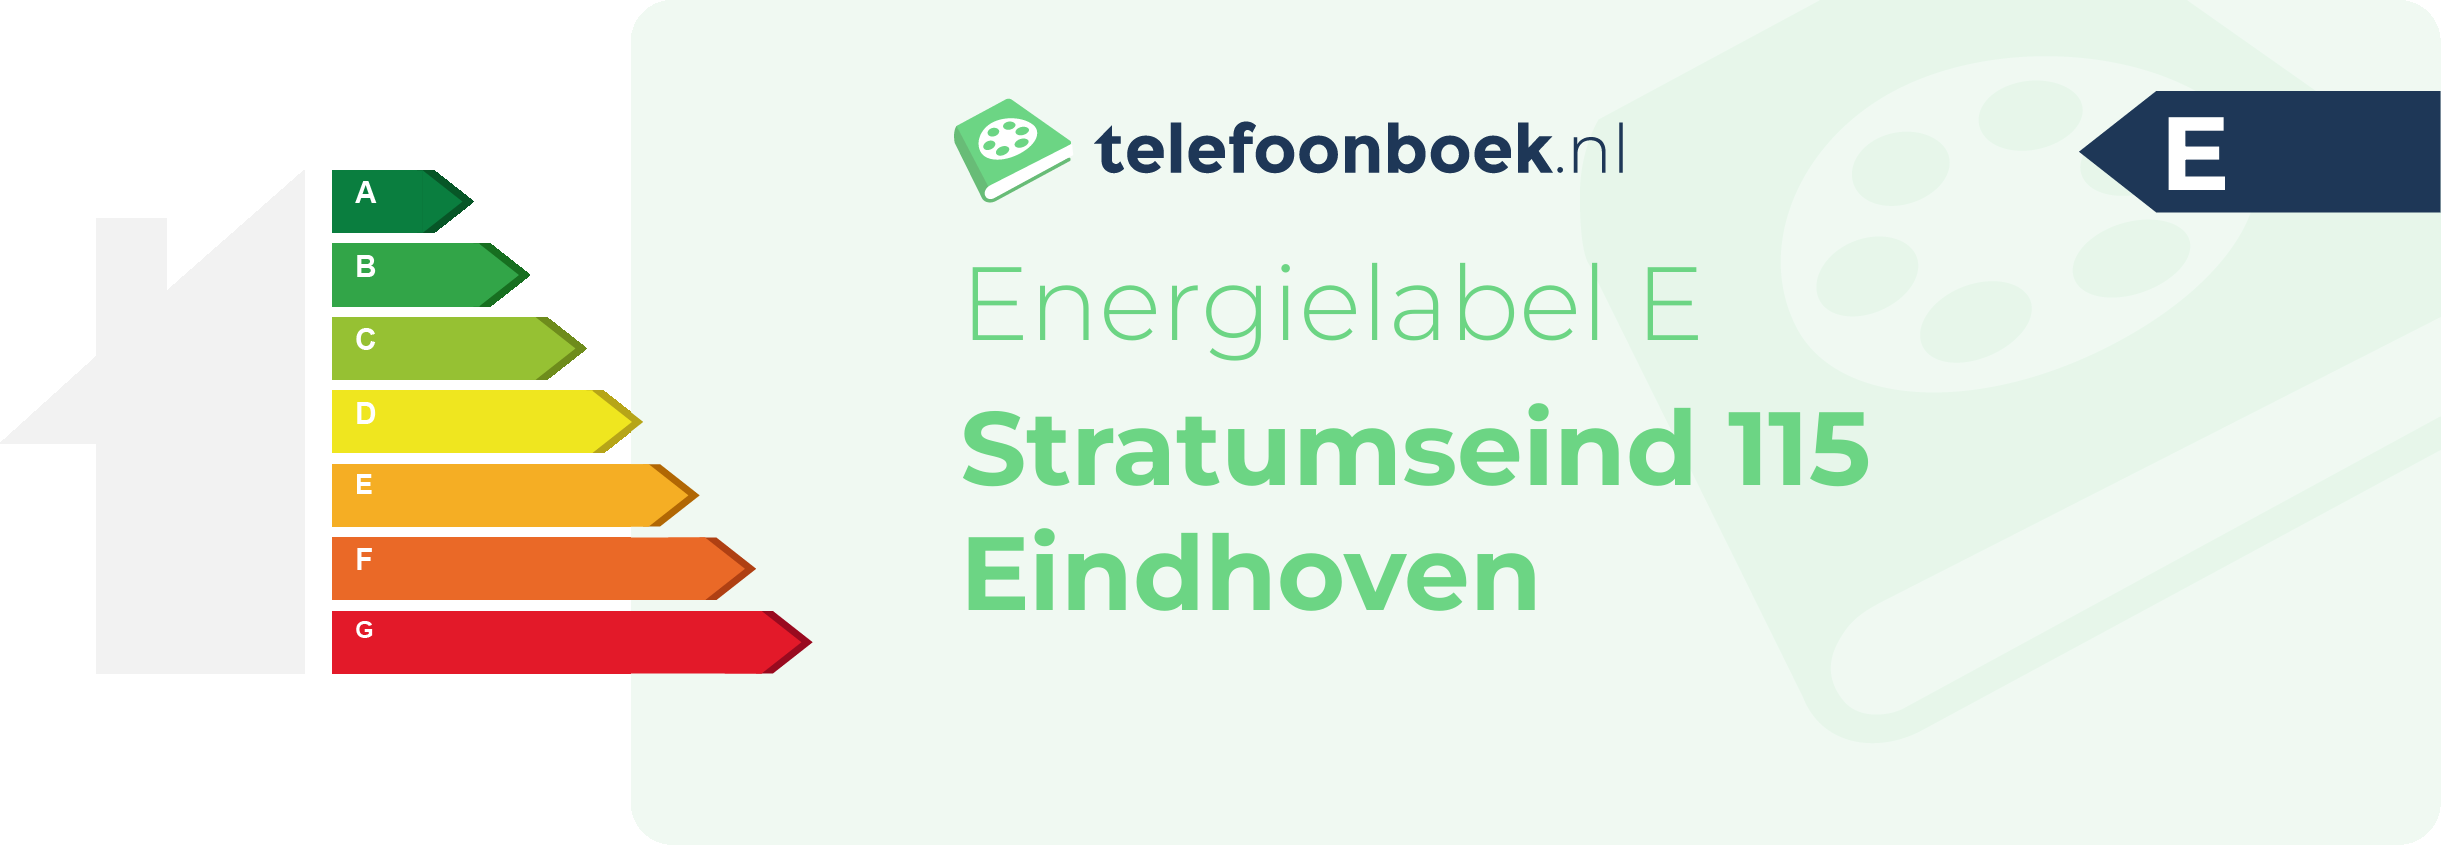 Energielabel Stratumseind 115 Eindhoven